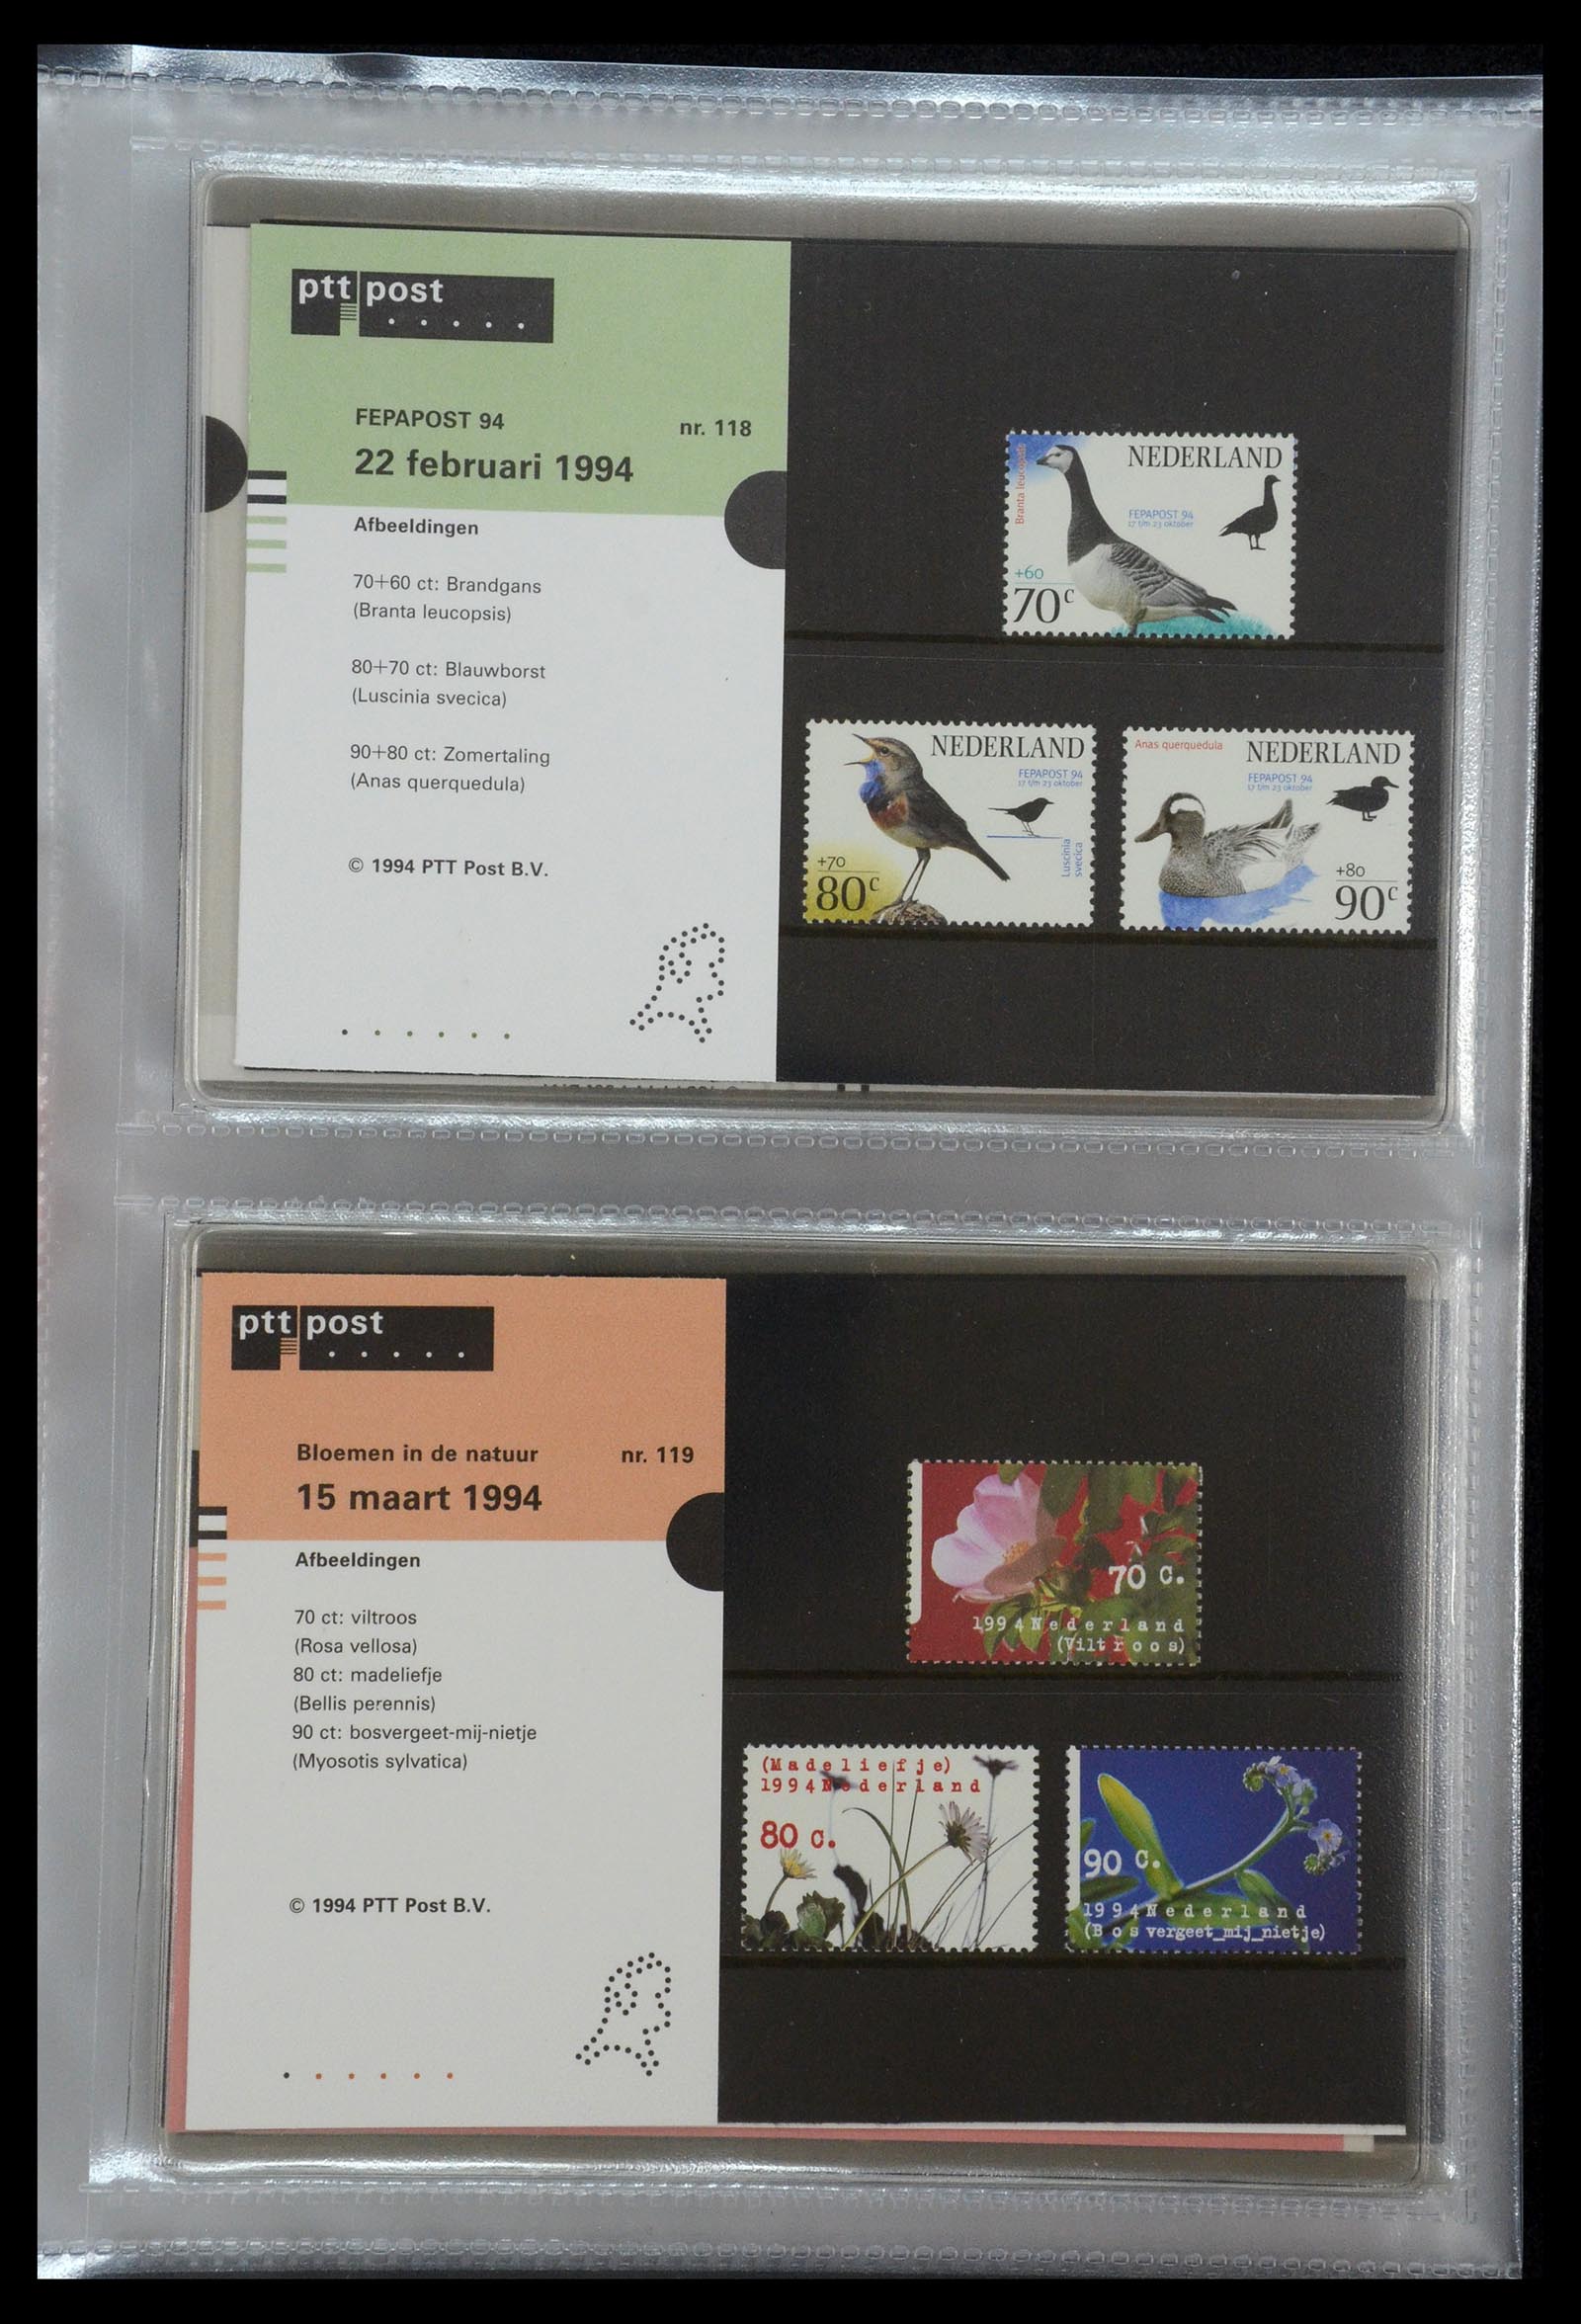 35144 061 - Stamp Collection 35144 Netherlands PTT presentation packs 1982-2021!